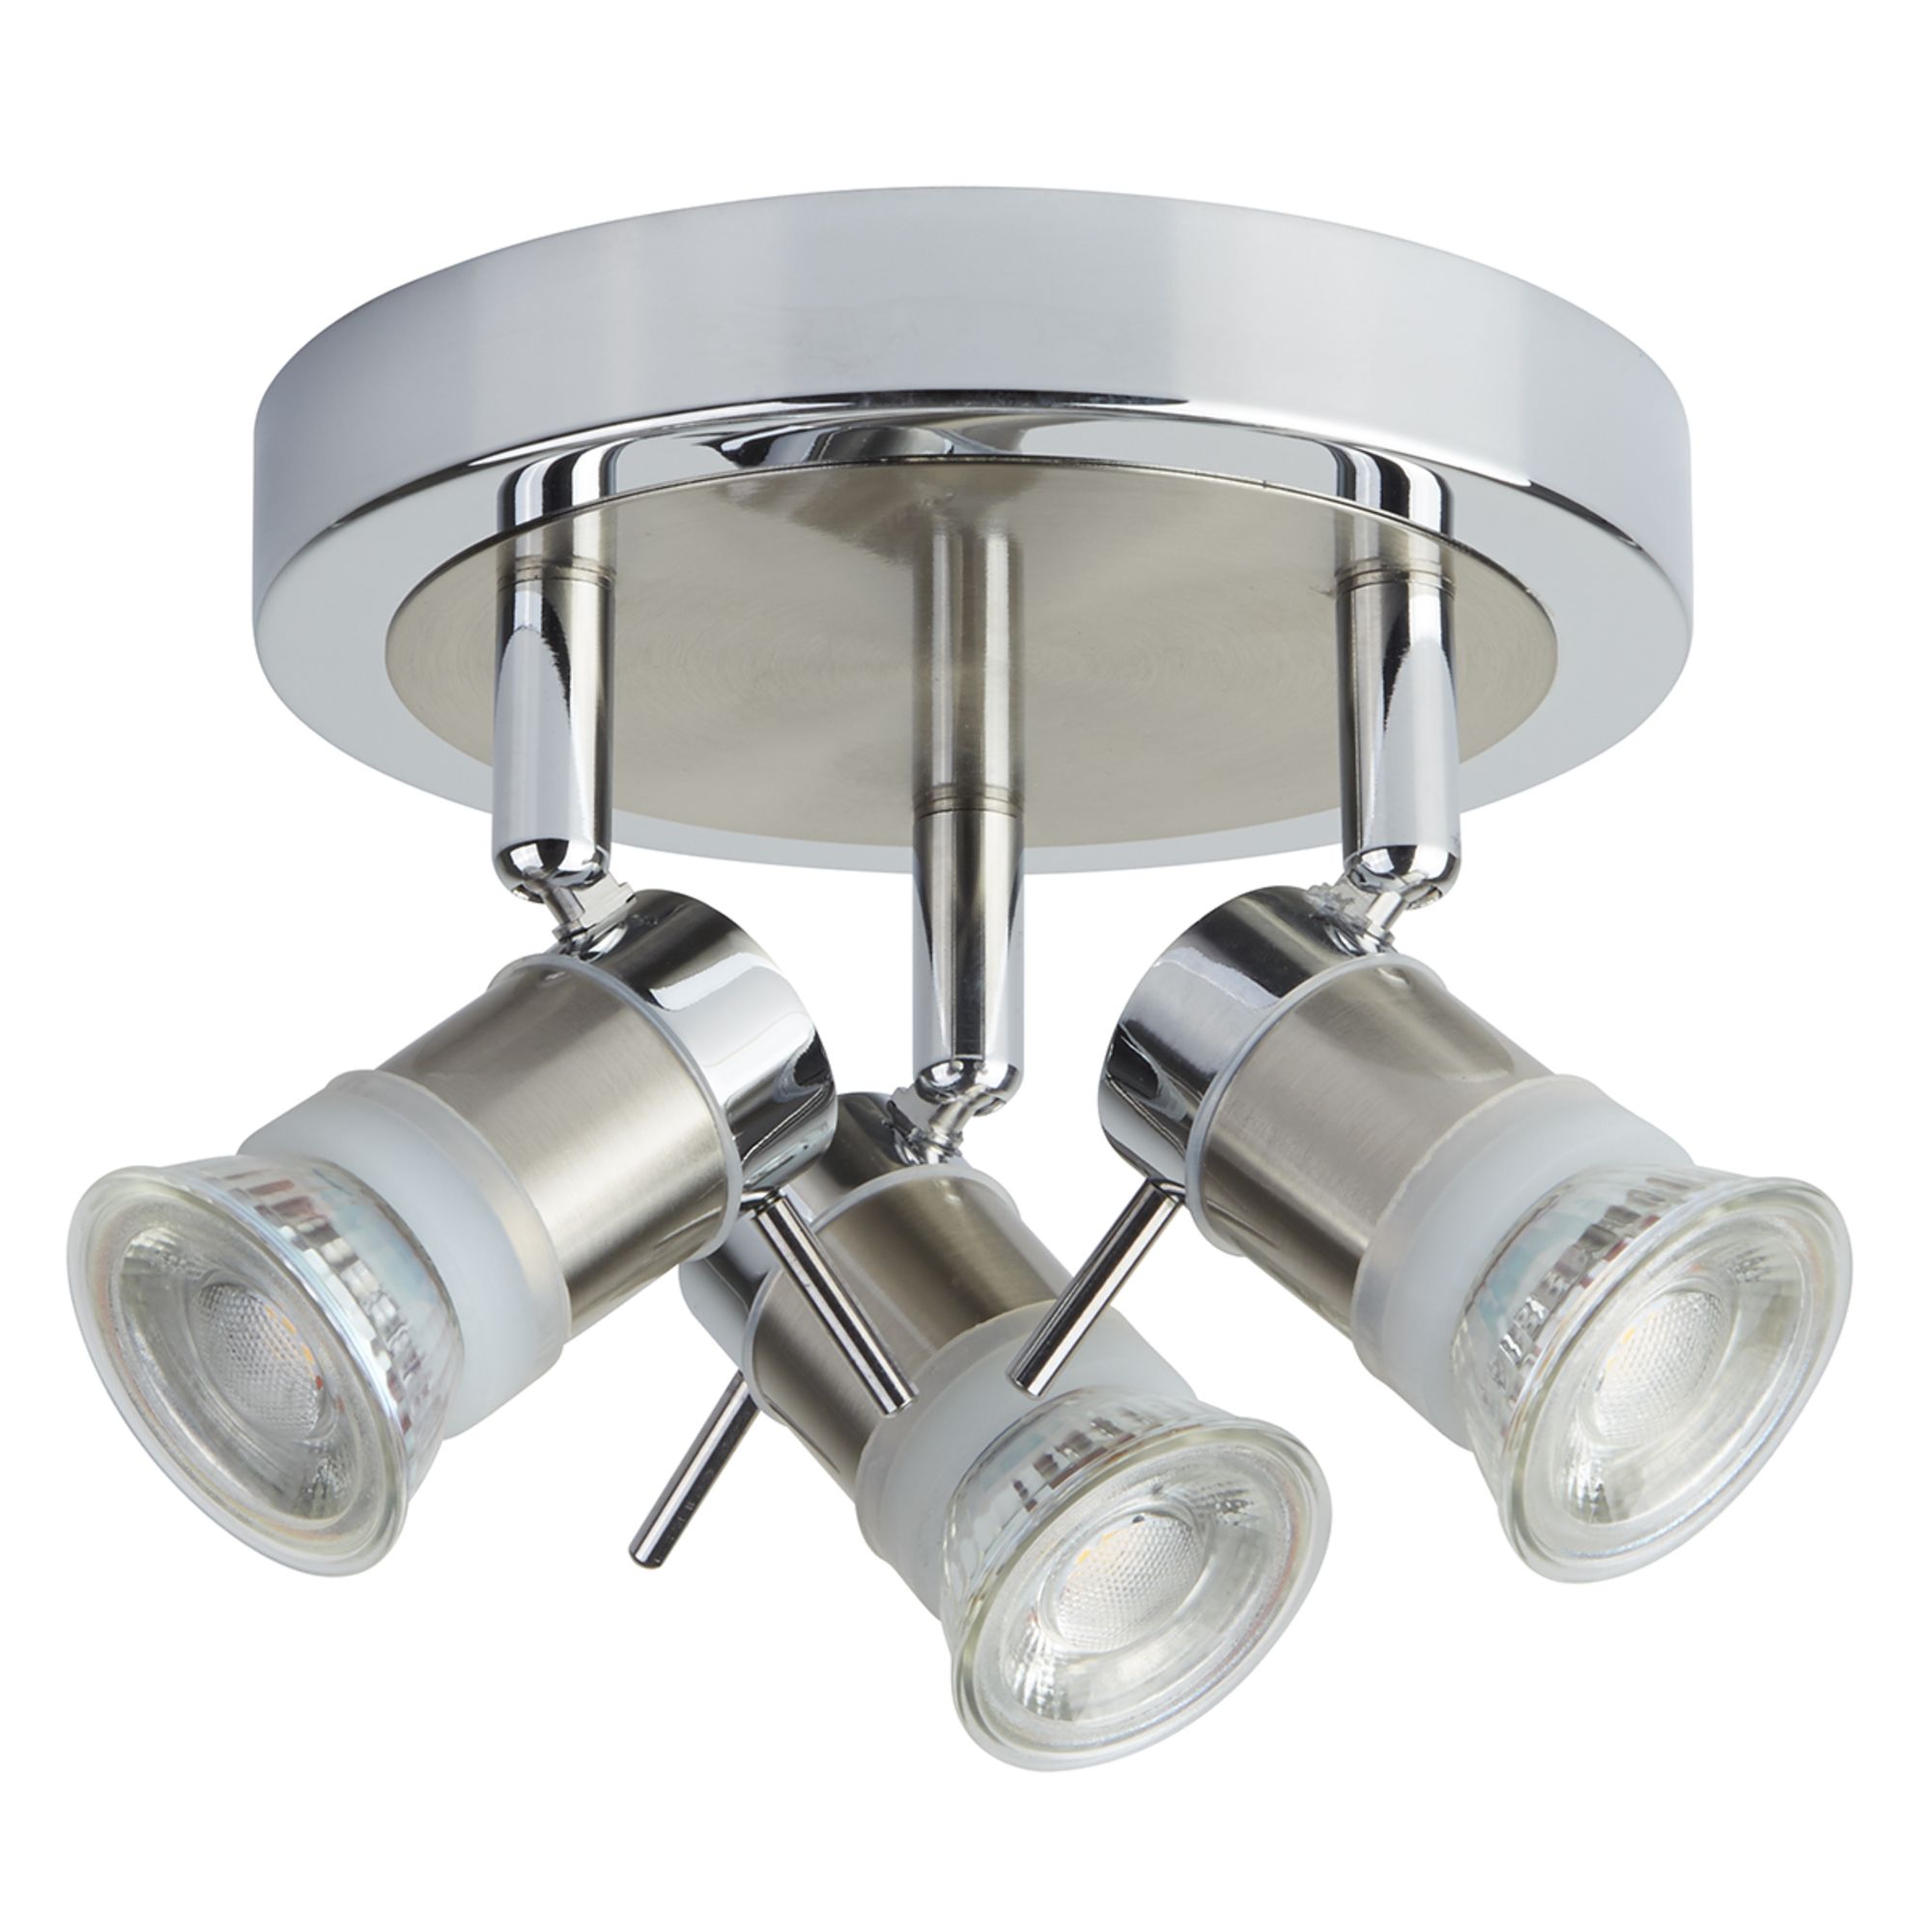 Aries 3 LED Adjustable Ceiling Spotlight